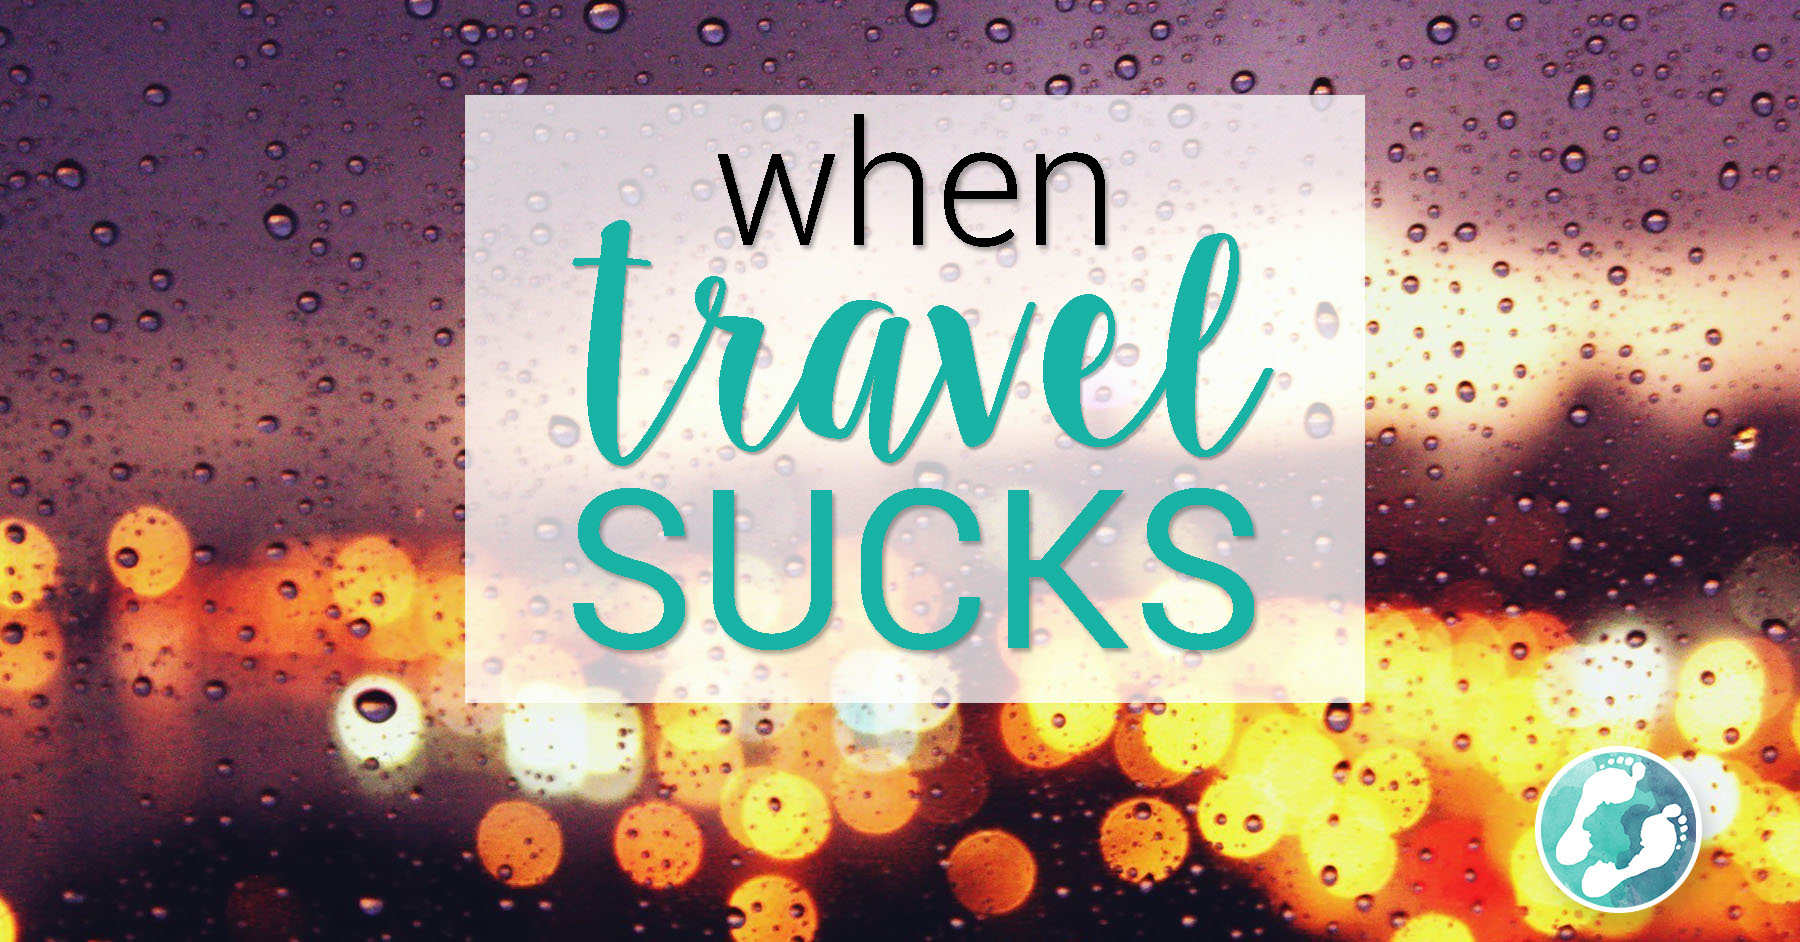 When travel sucks